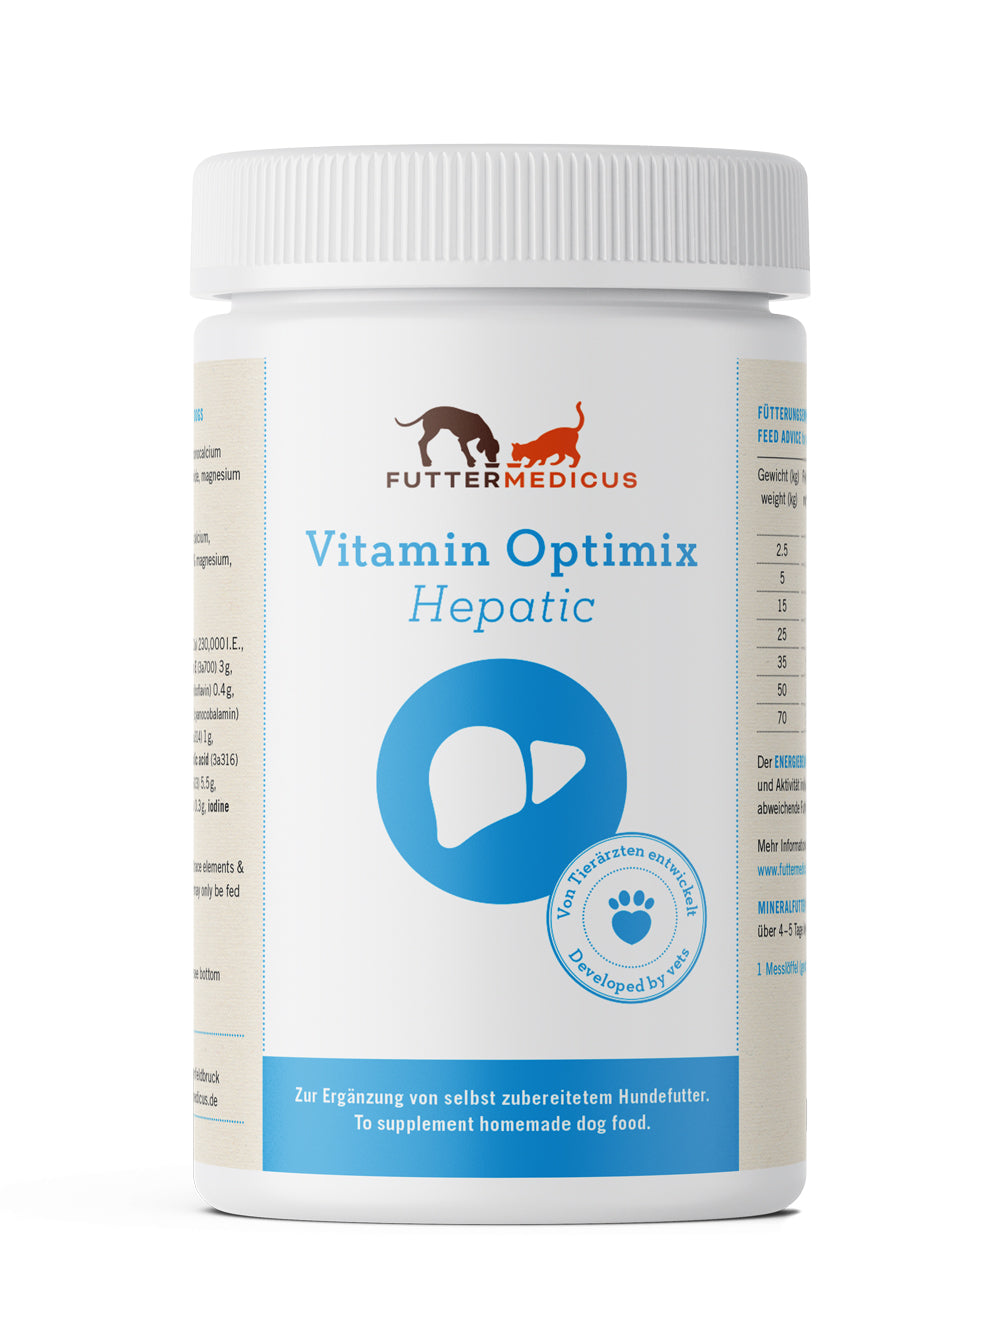 Vitamin Optimix Hepatic